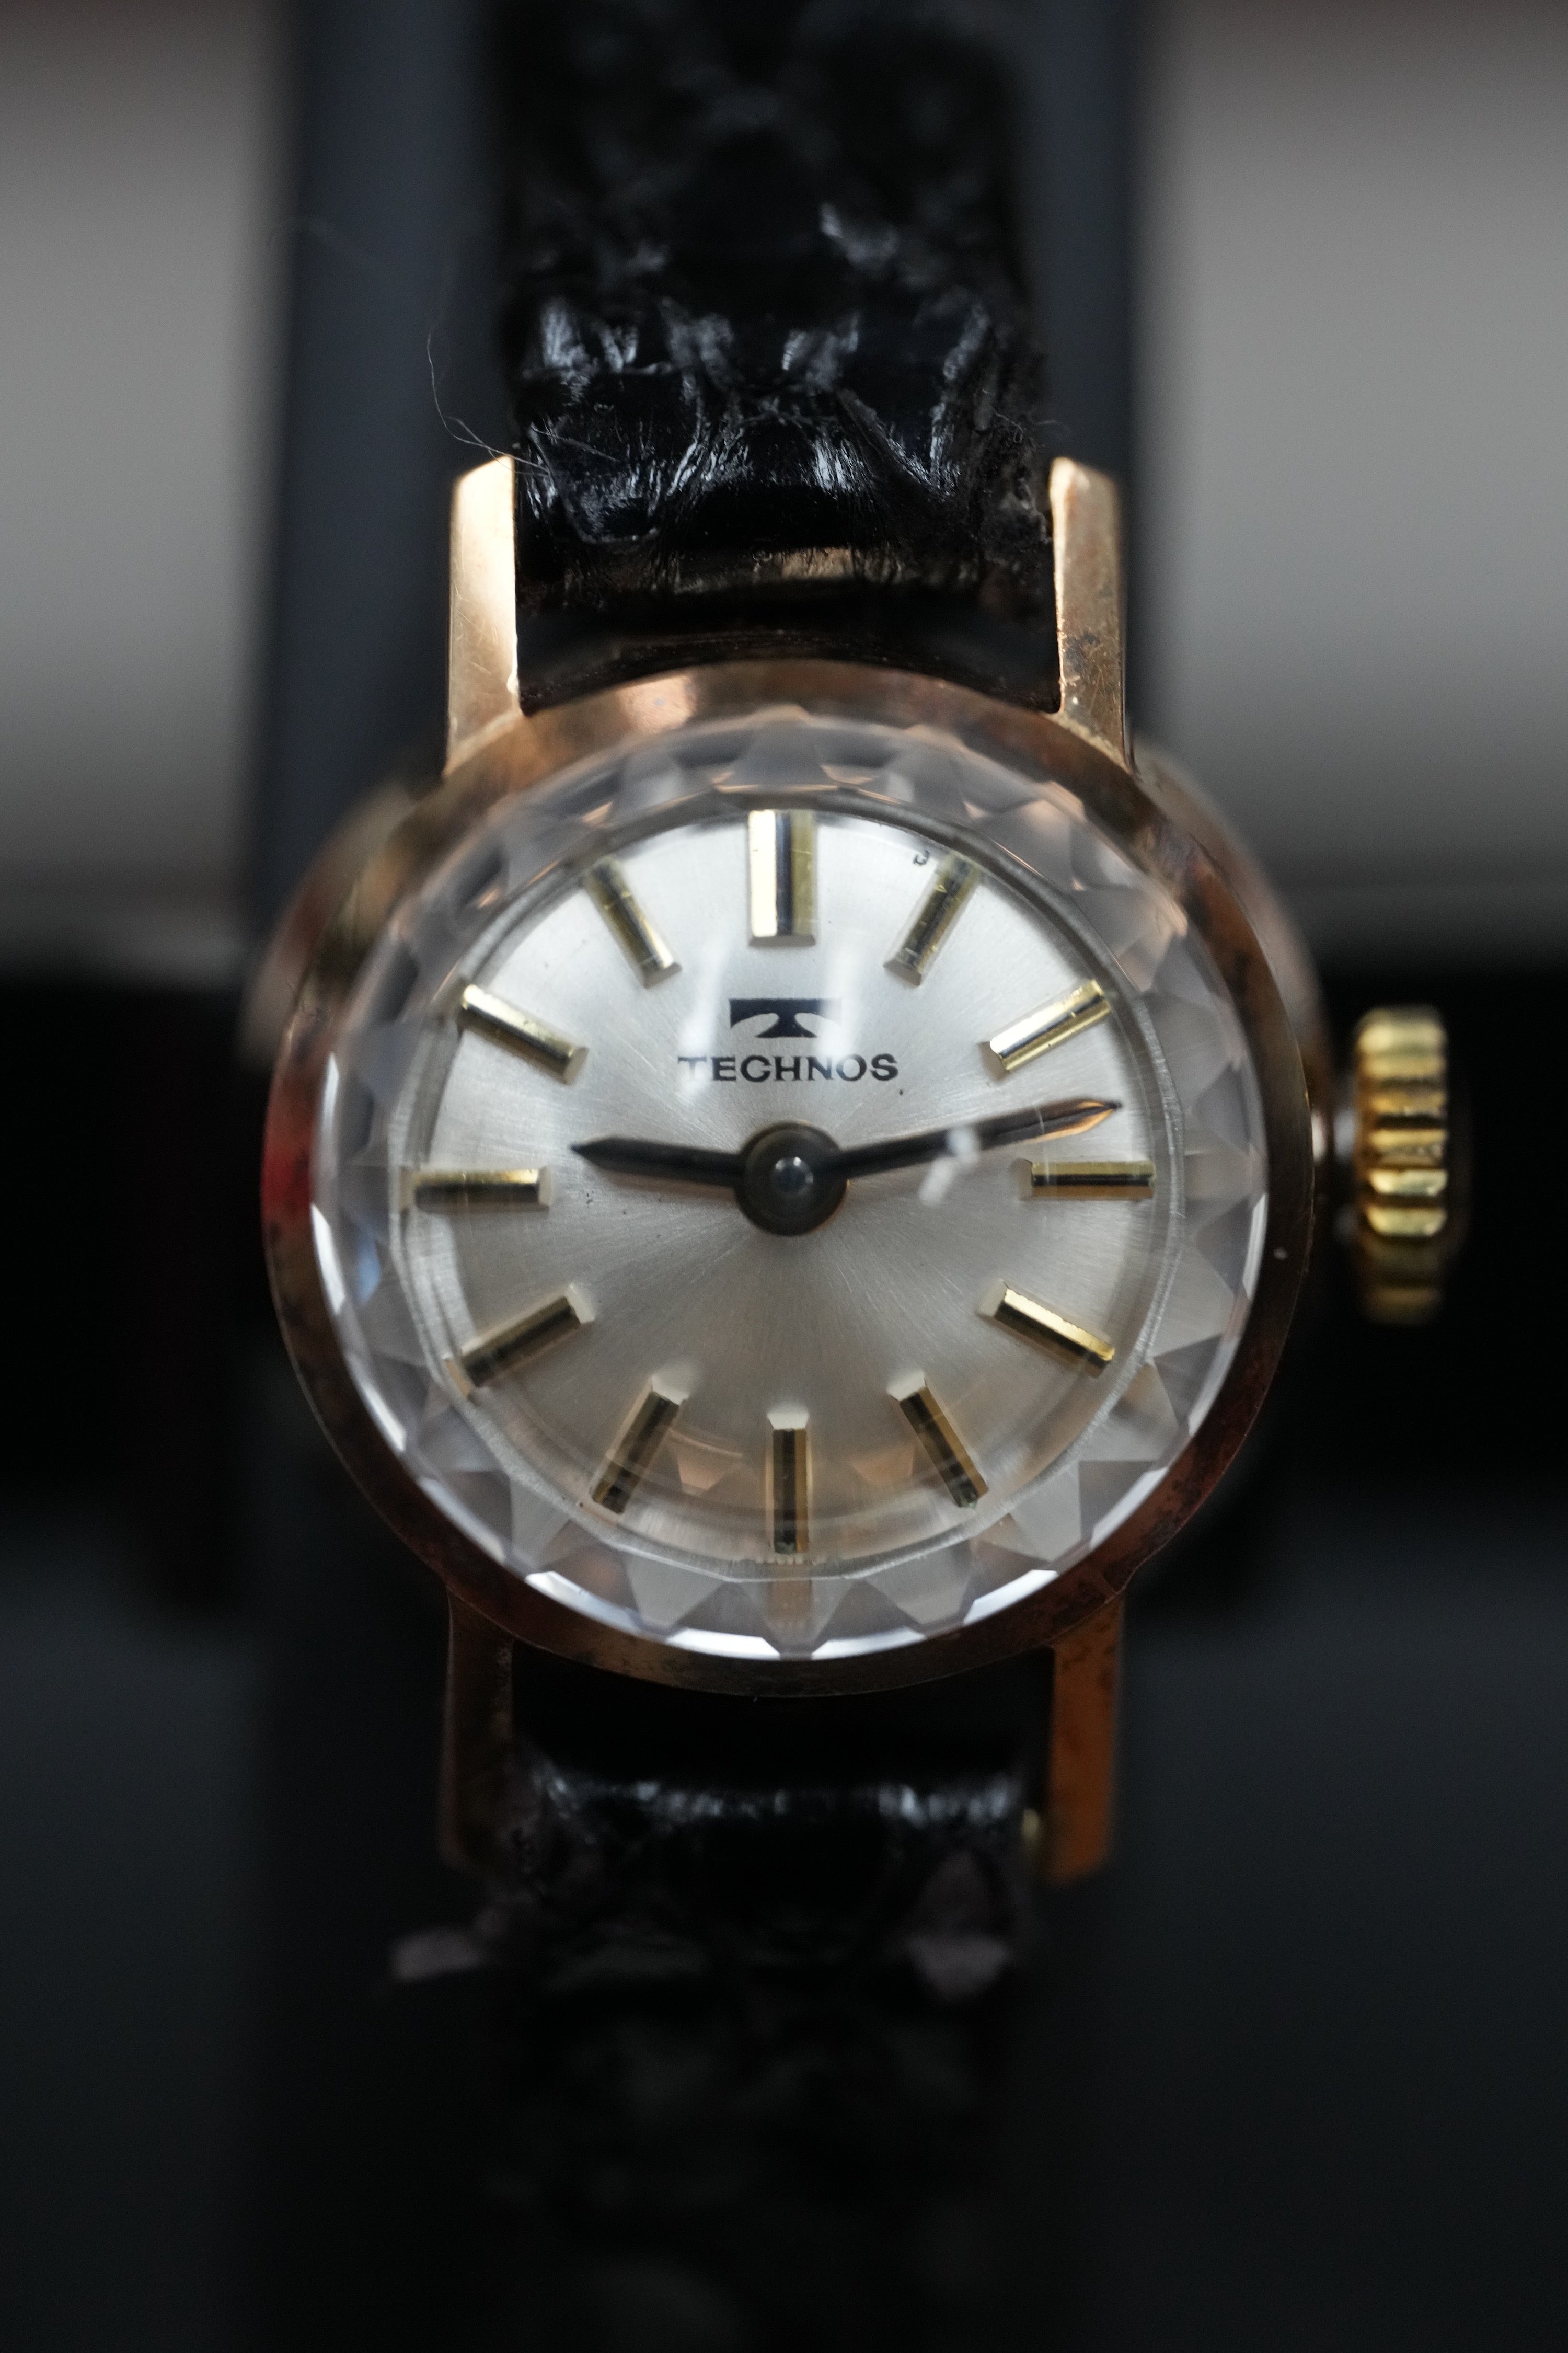 14k gold watch Technos